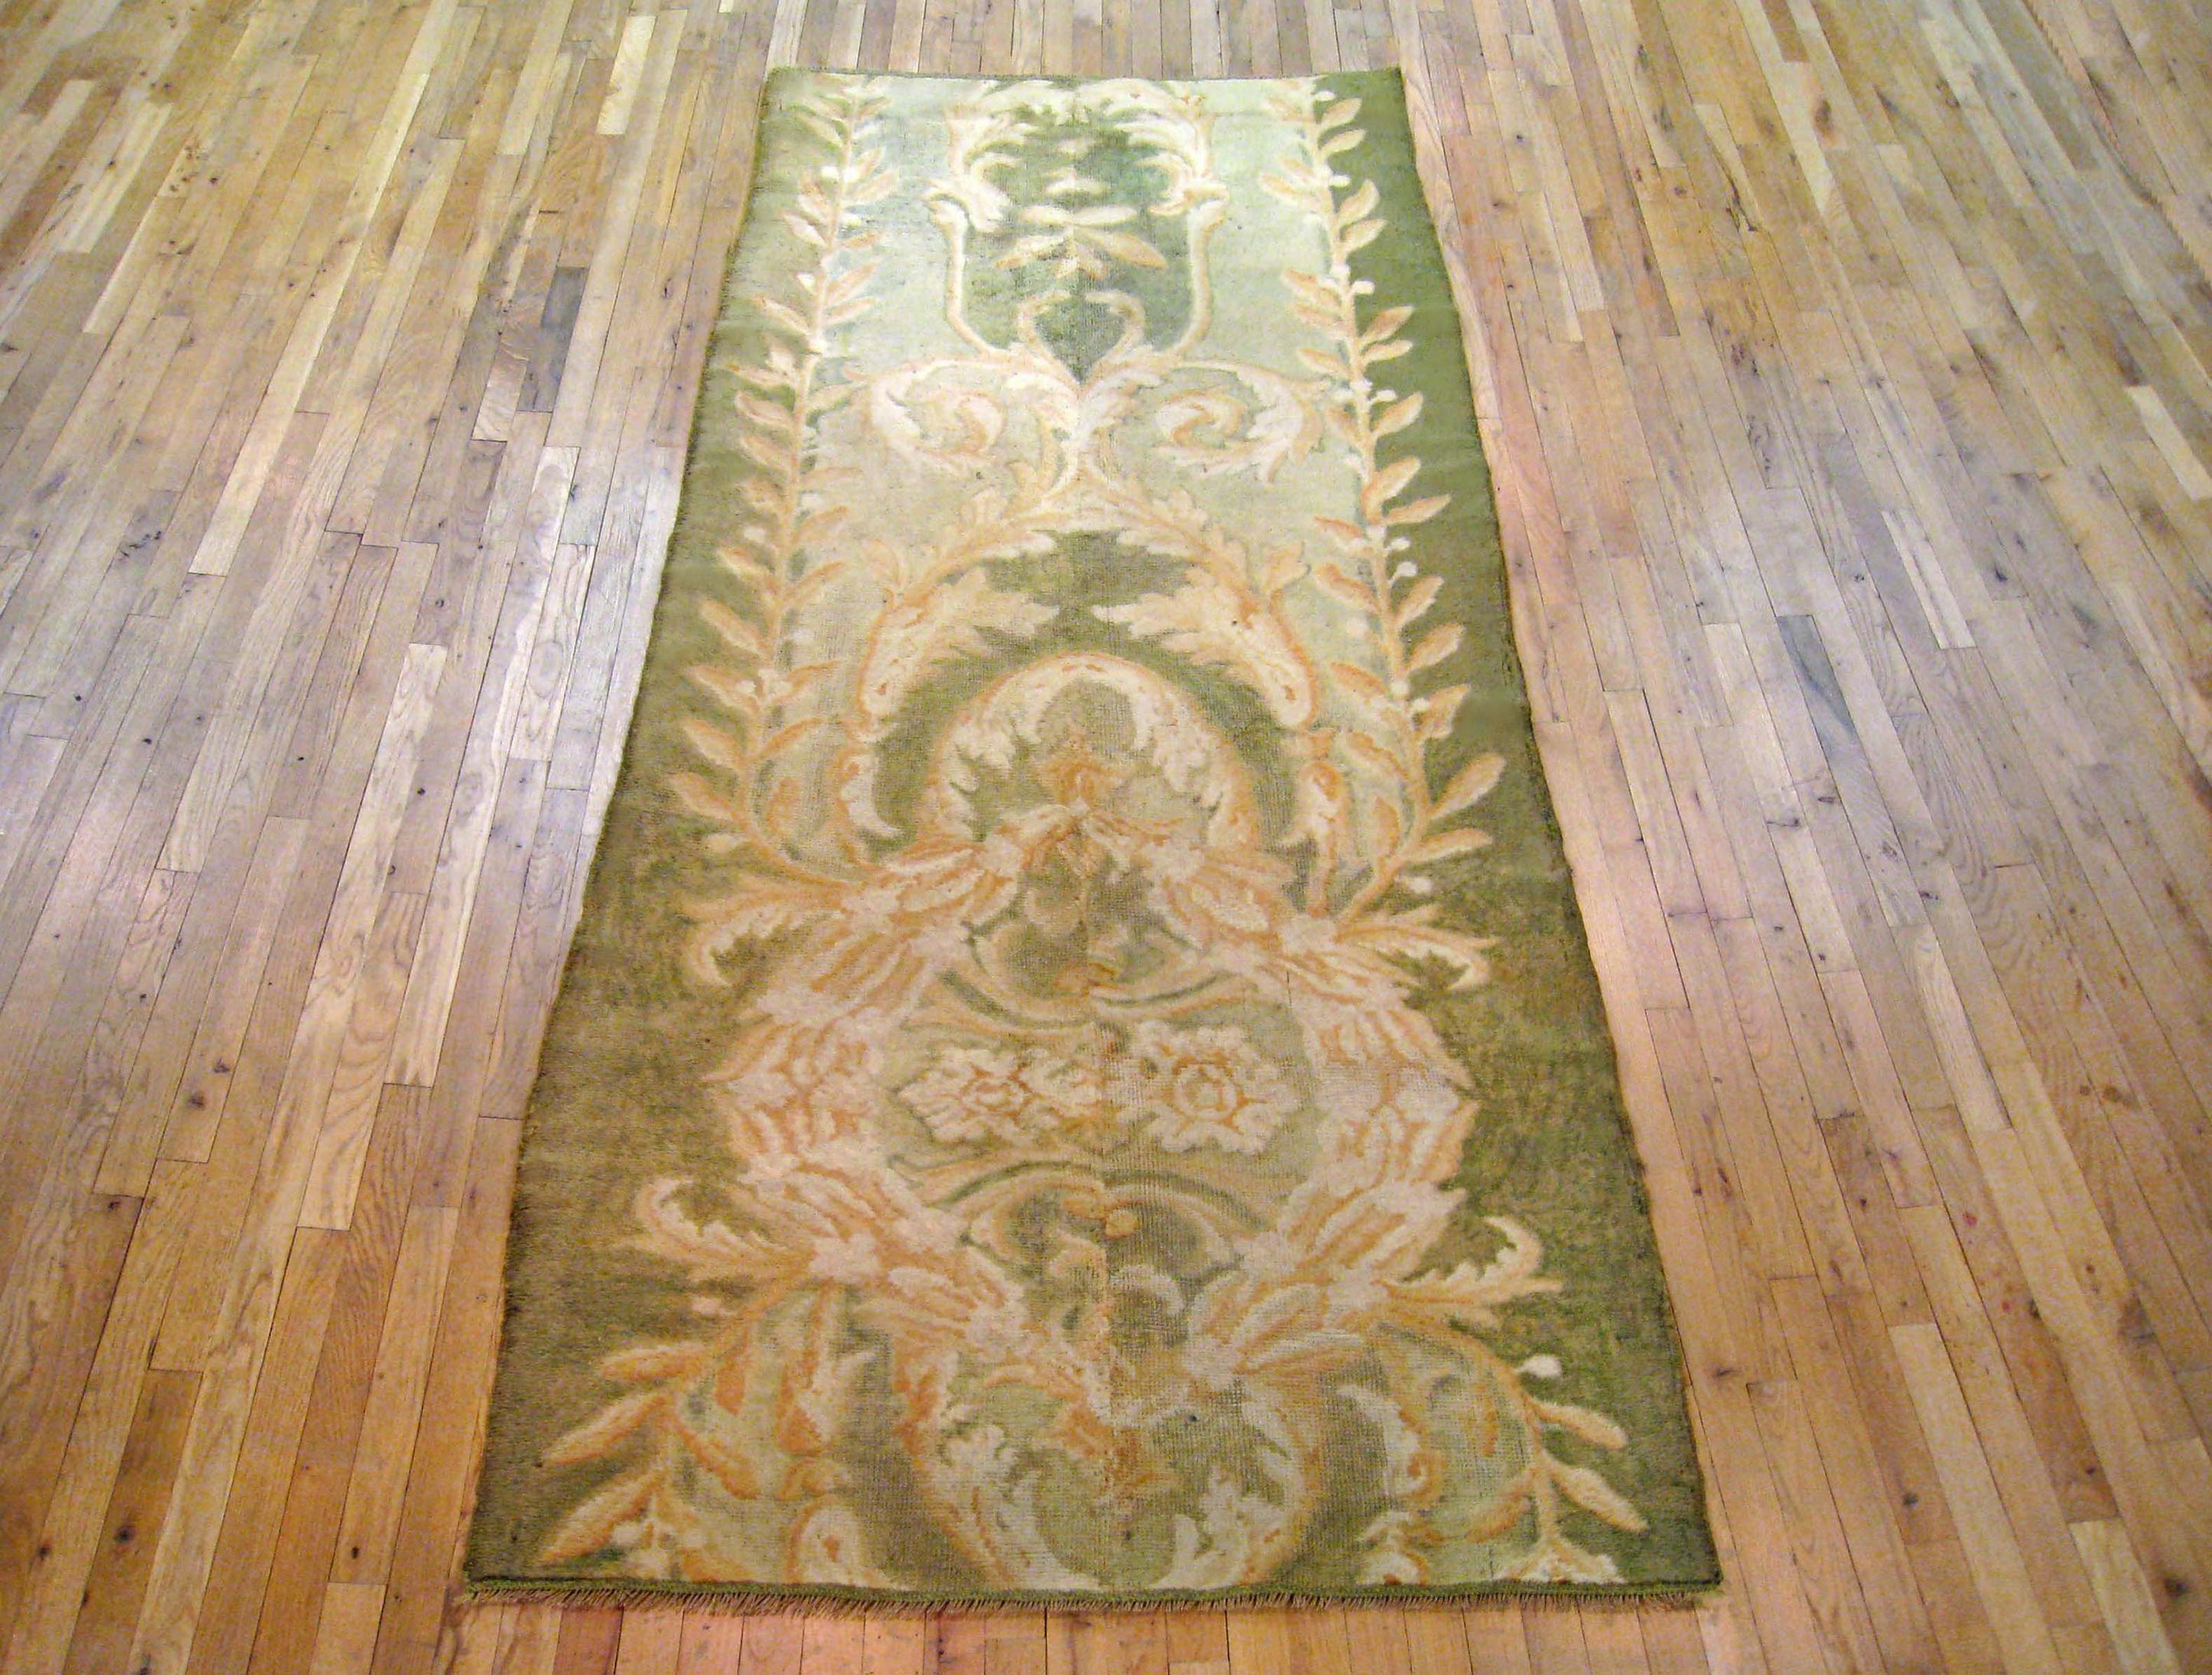 Antiker spanischer Savonnerie-Teppich, Galeriegröße, um 1910

Ein einzigartiger antiker europäischer Savonnerie-Orientalteppich, handgeknüpft mit kurzem Wollflor. Dieser schöne Teppich zeigt florale Elemente auf dem grünen Grundfeld mit